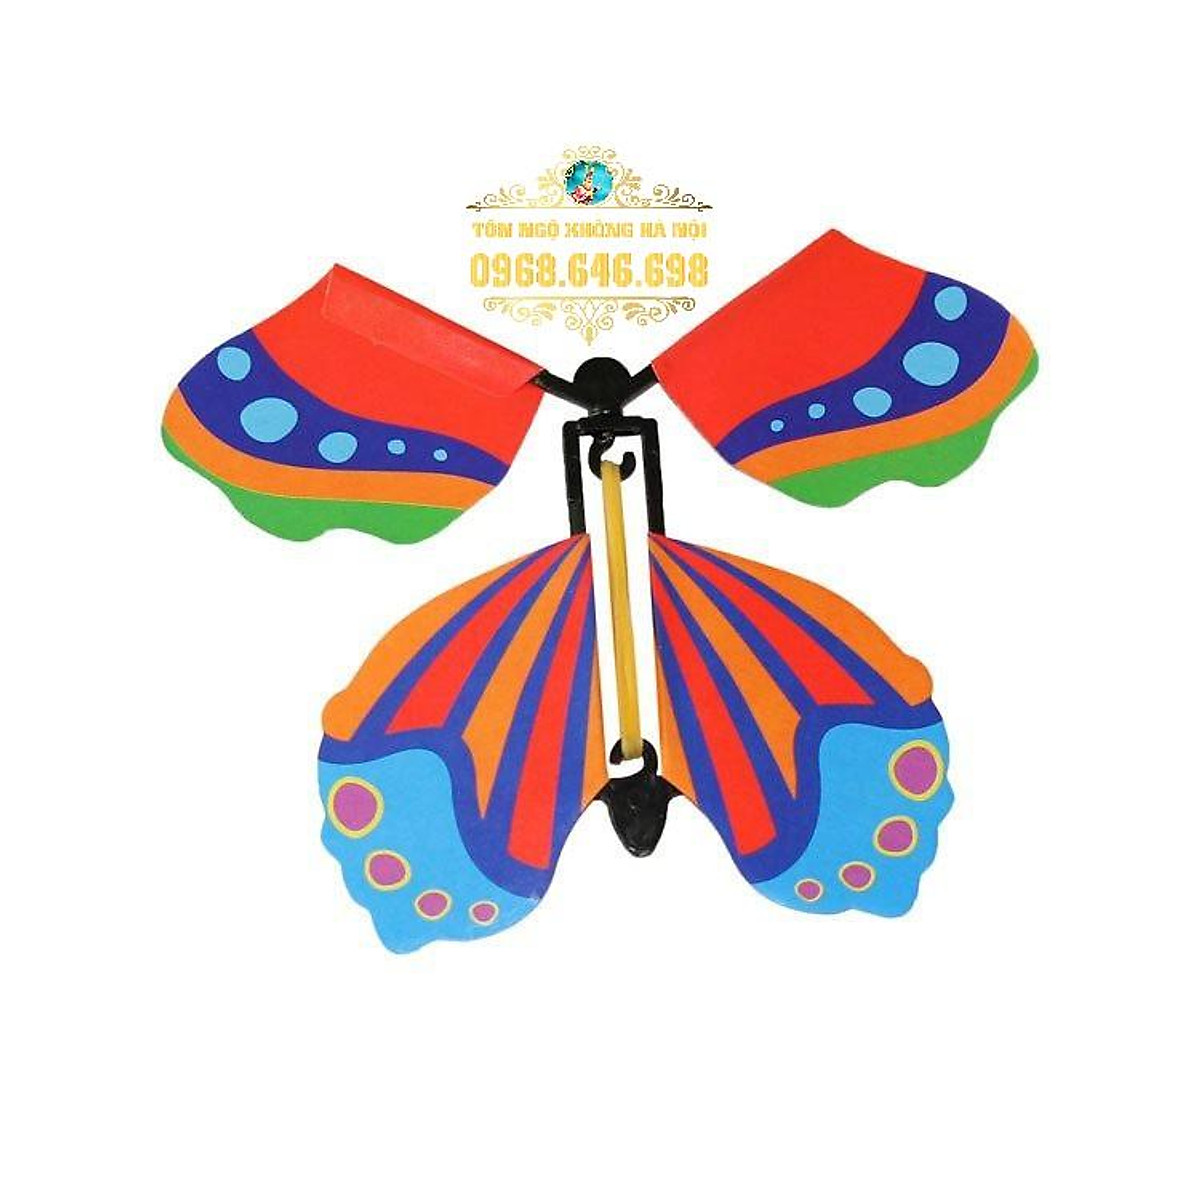 Đồ họa mạng di động Borboleta Thiết kế hình ảnh con bướm  png tải về   Miễn phí trong suốt Bướm png Tải về